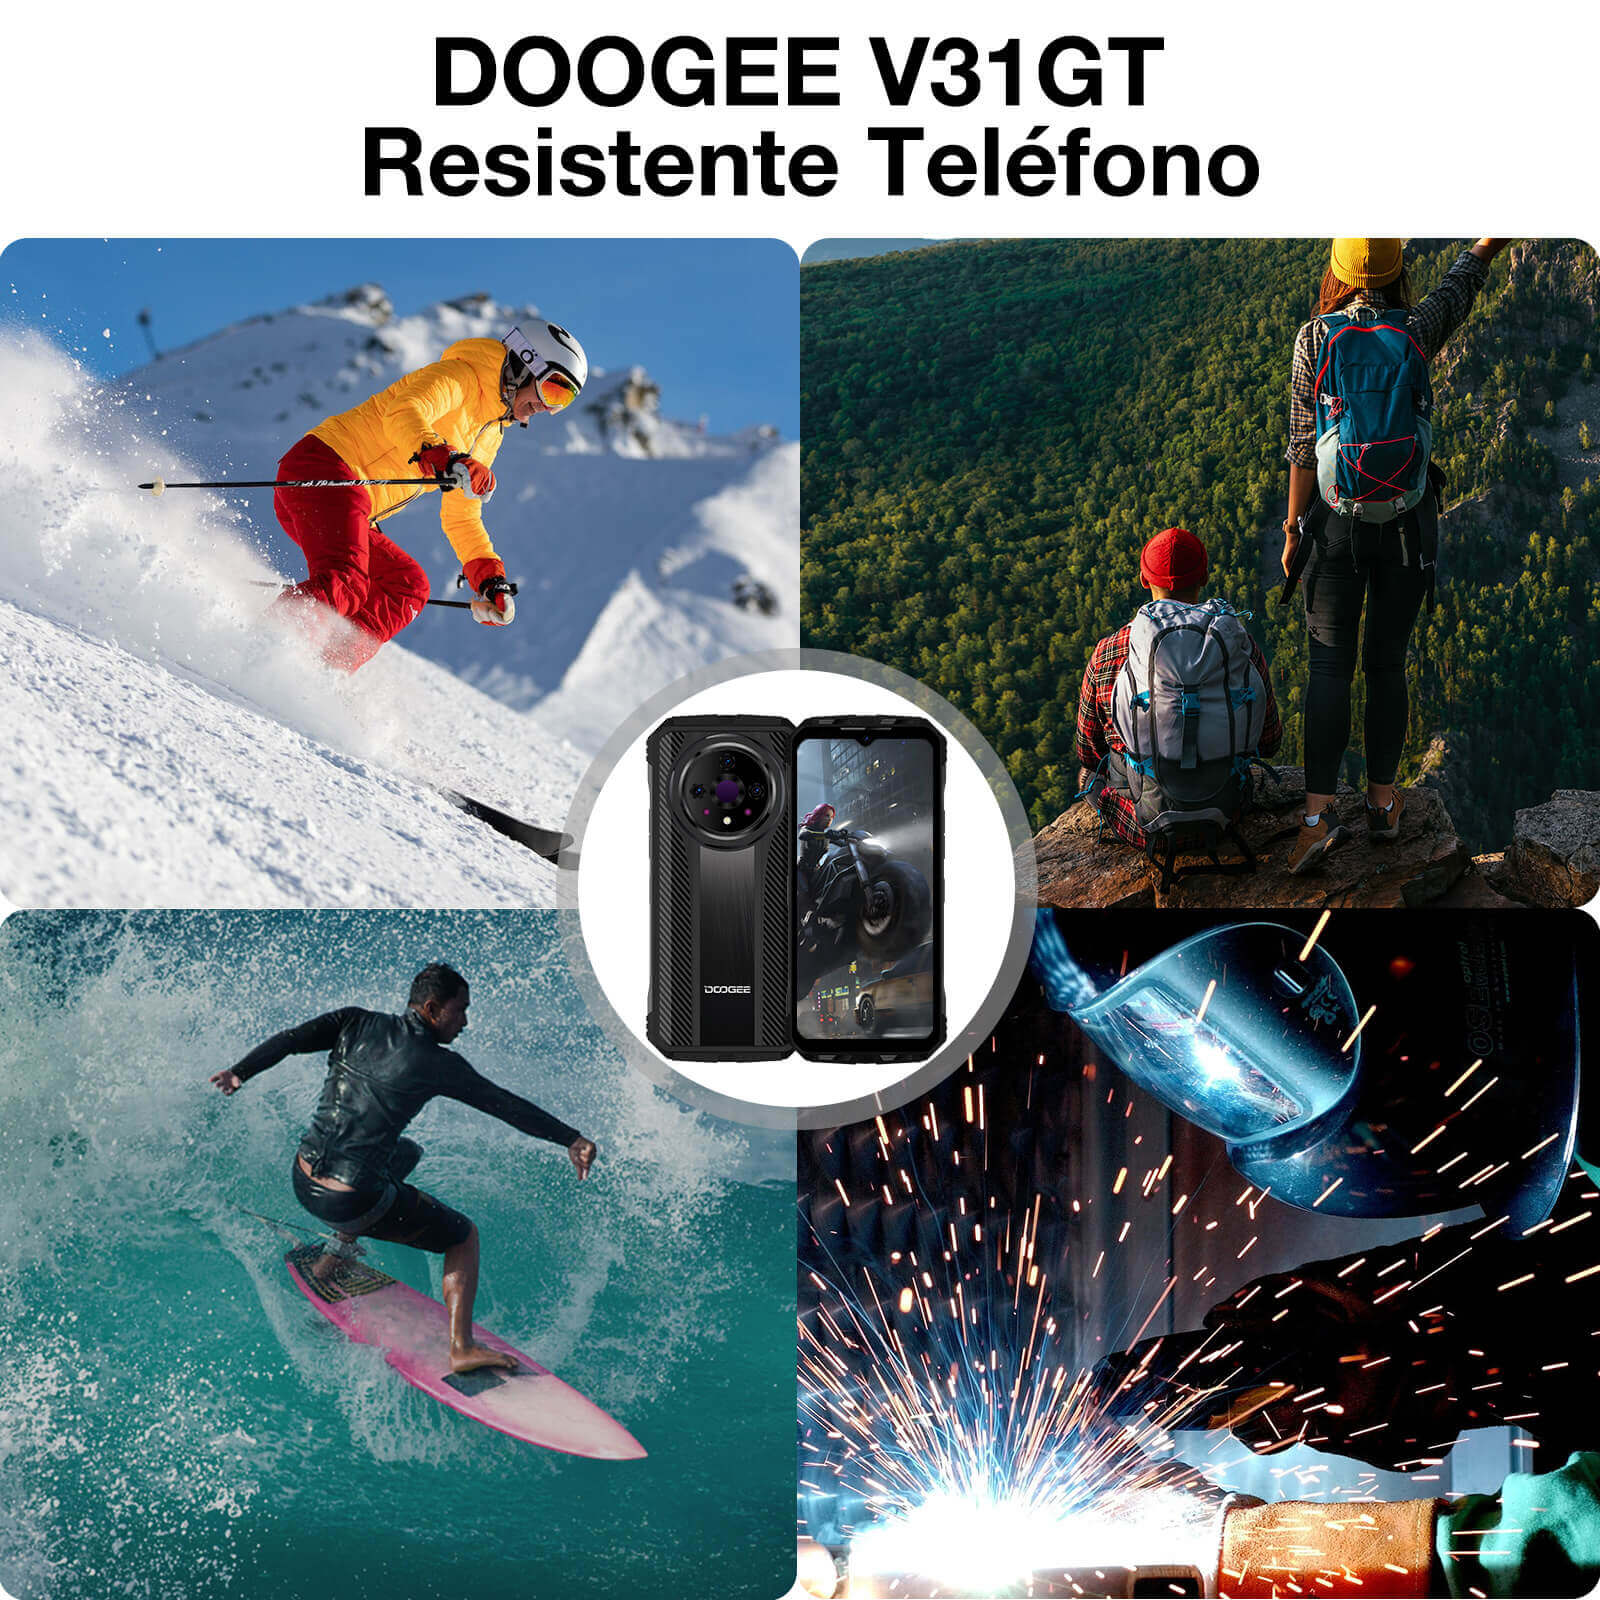 DOOGEE® V31 GT Dimensity 1080 10800mAh función de imagen térmica